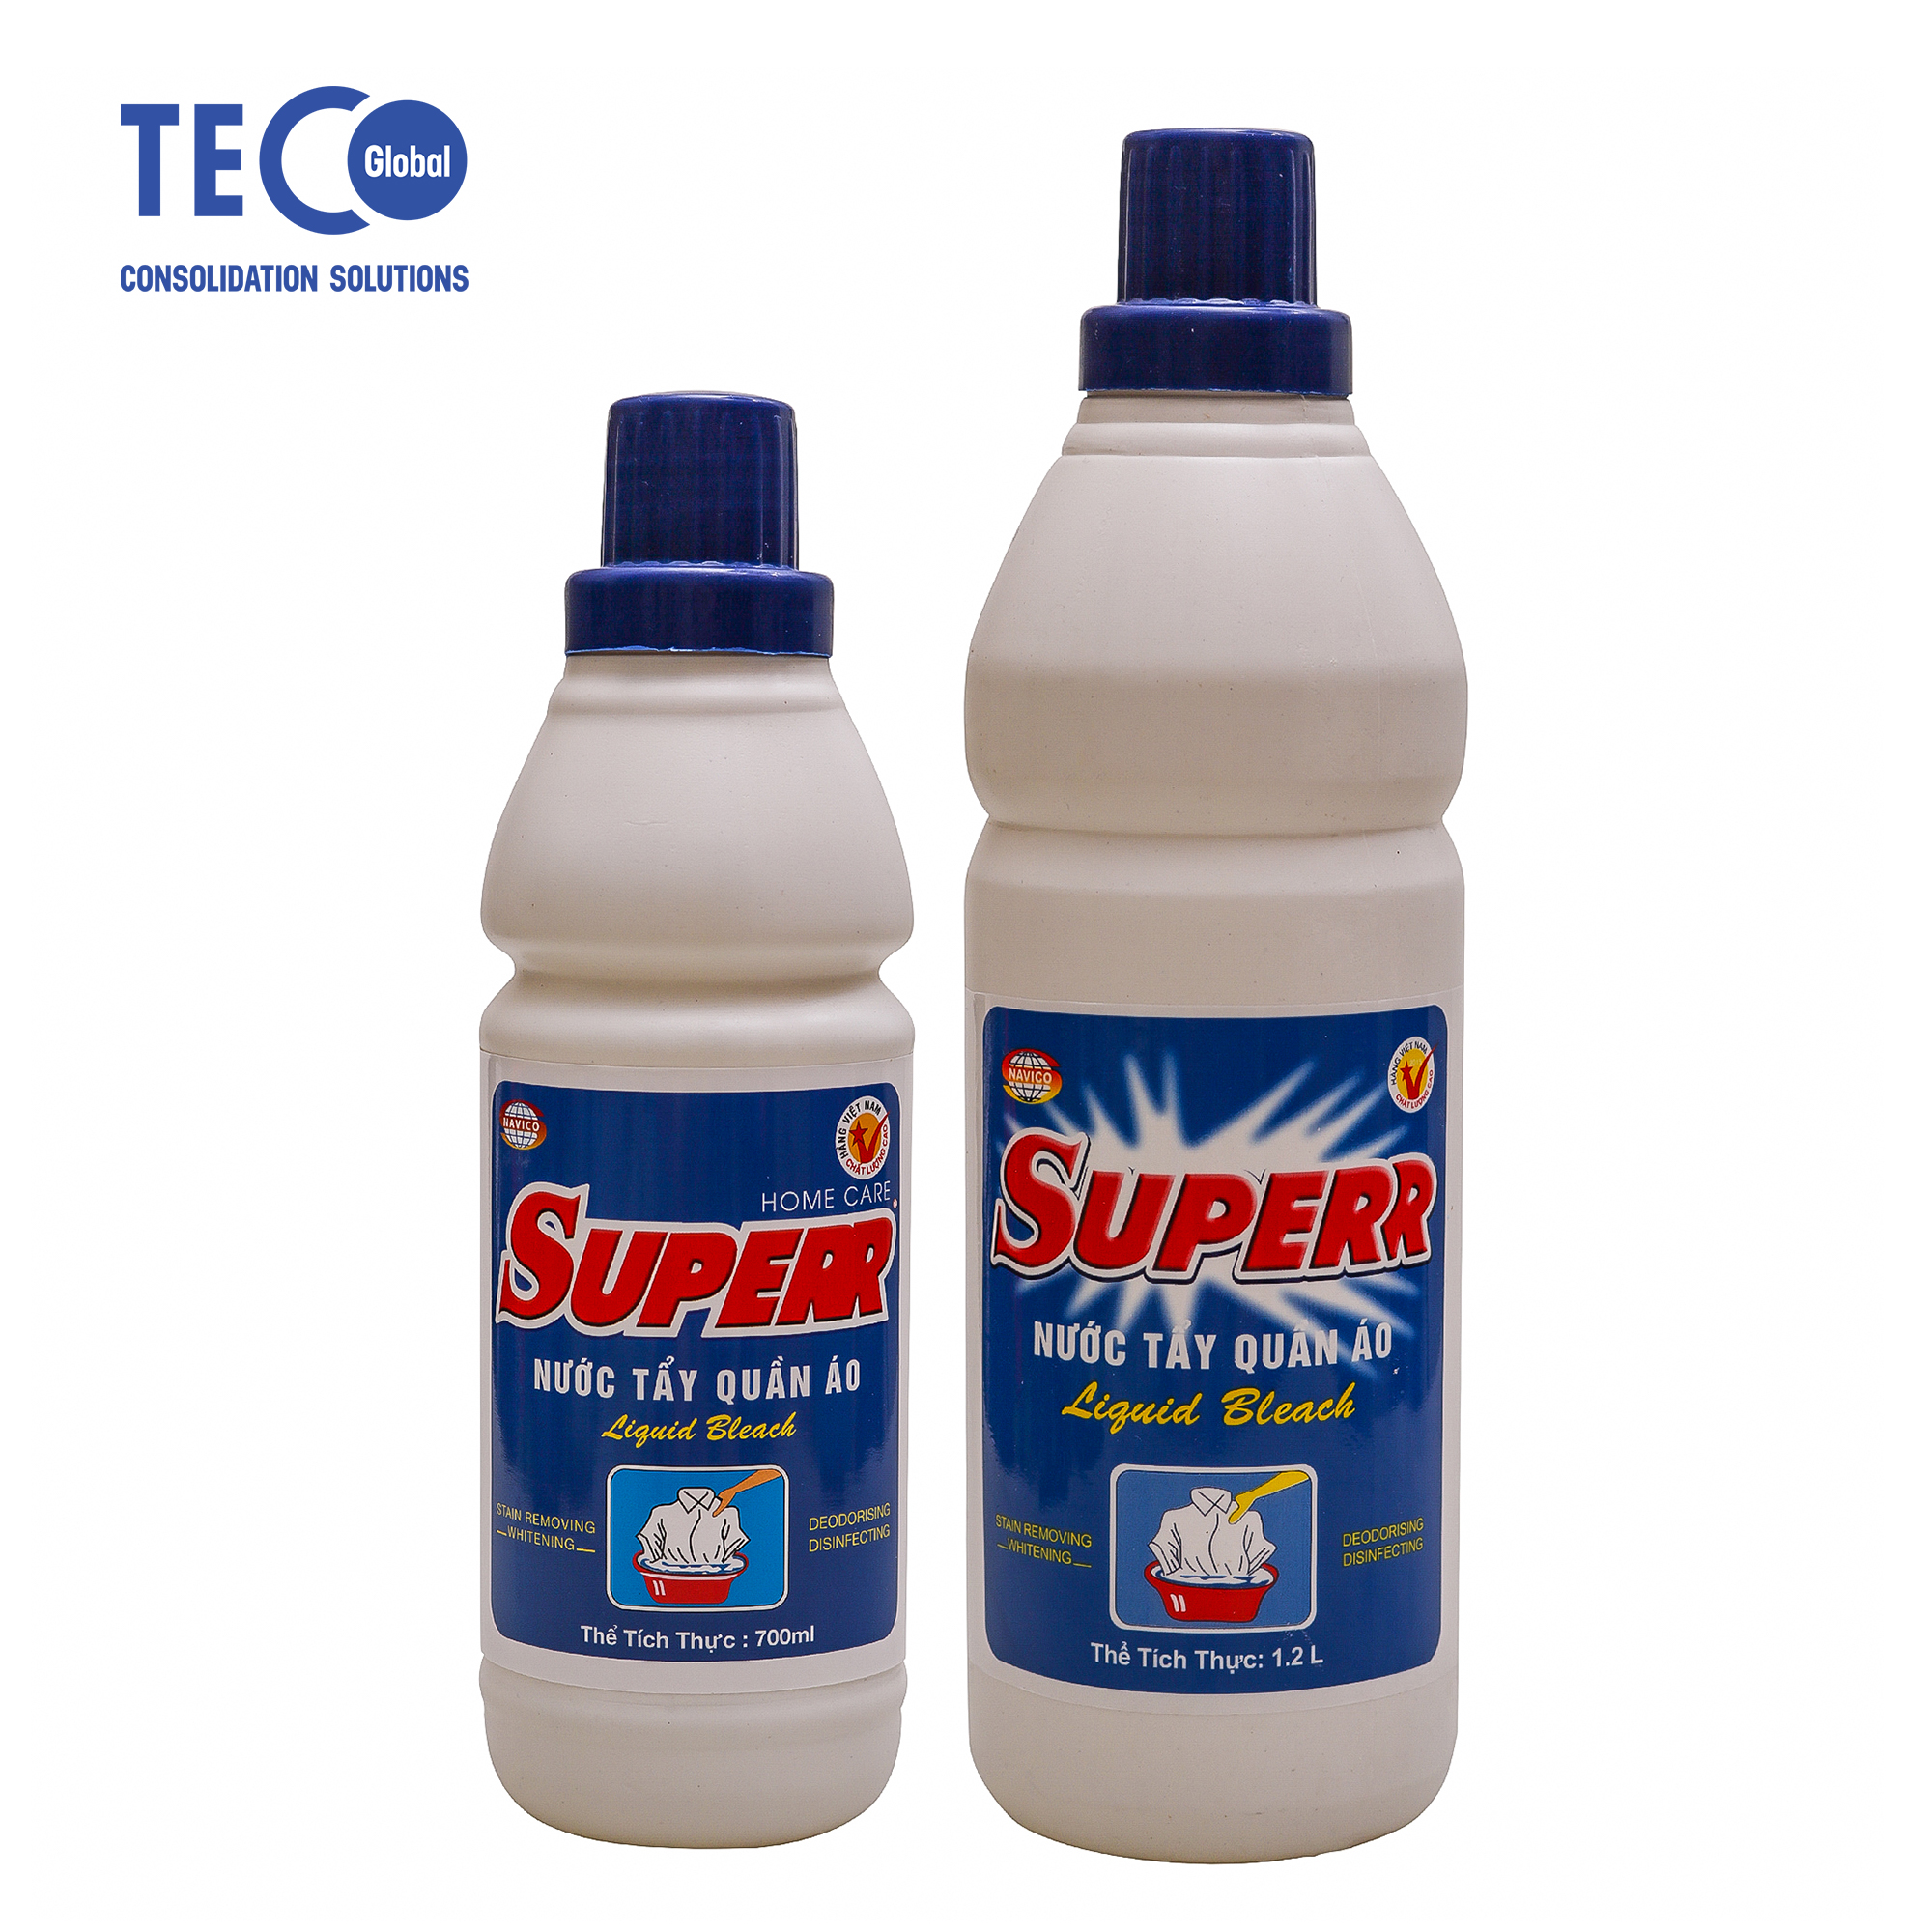 Nước tẩy quần áo Superr 450ml, siêu trắng sáng, tẩy sạch nhanh